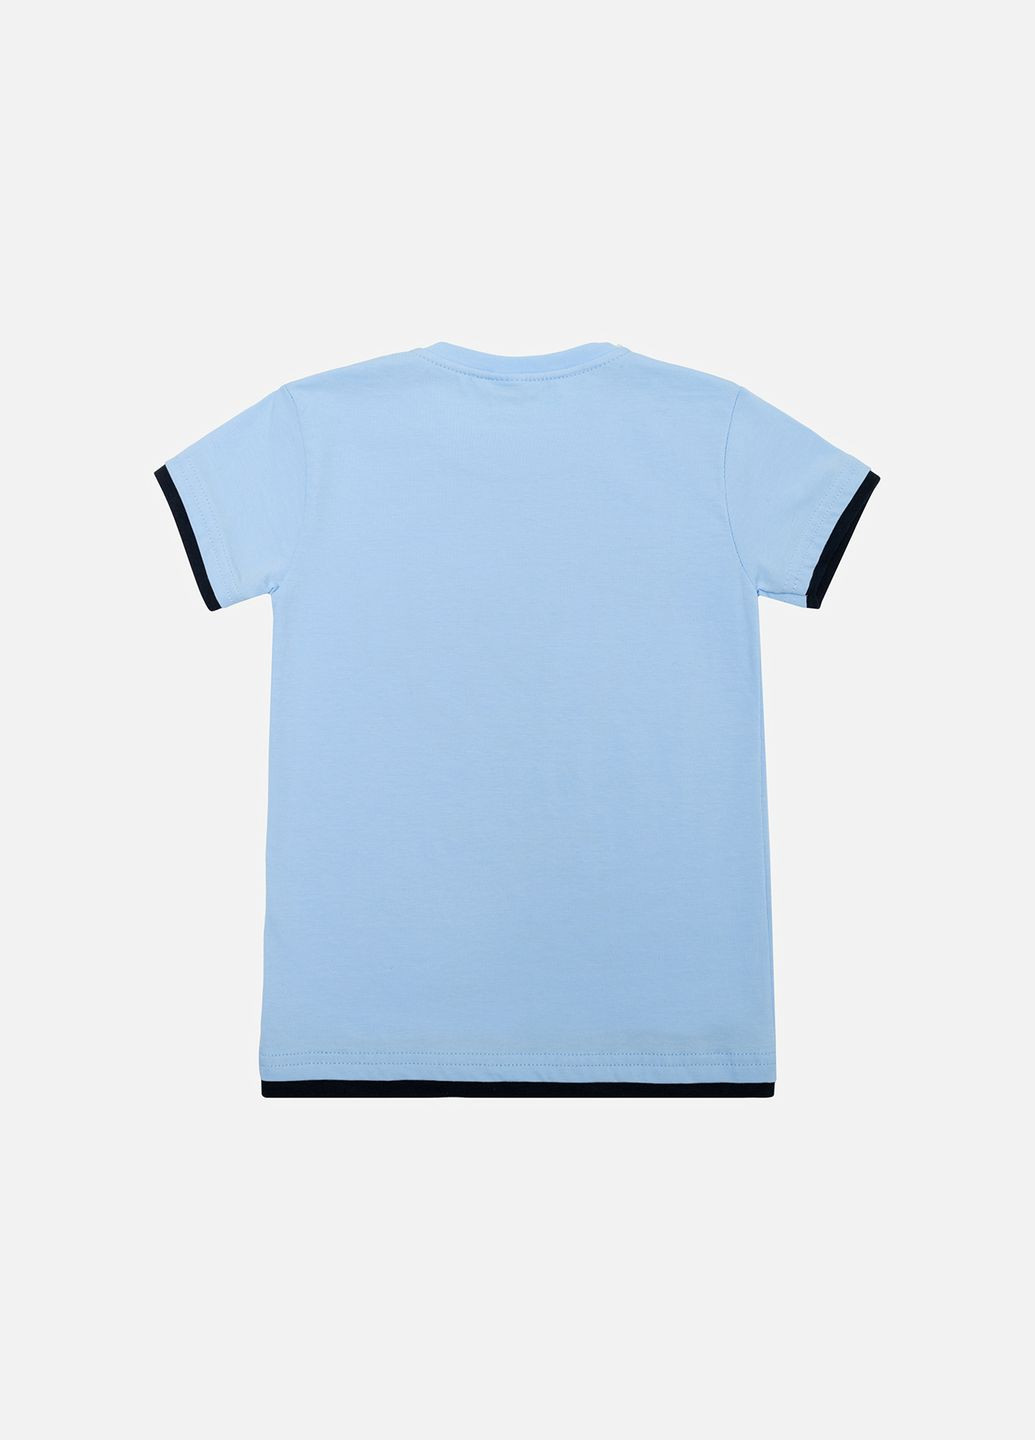 Голубая летняя футболка для мальчика цвет голубой цб-00223105 Galilatex